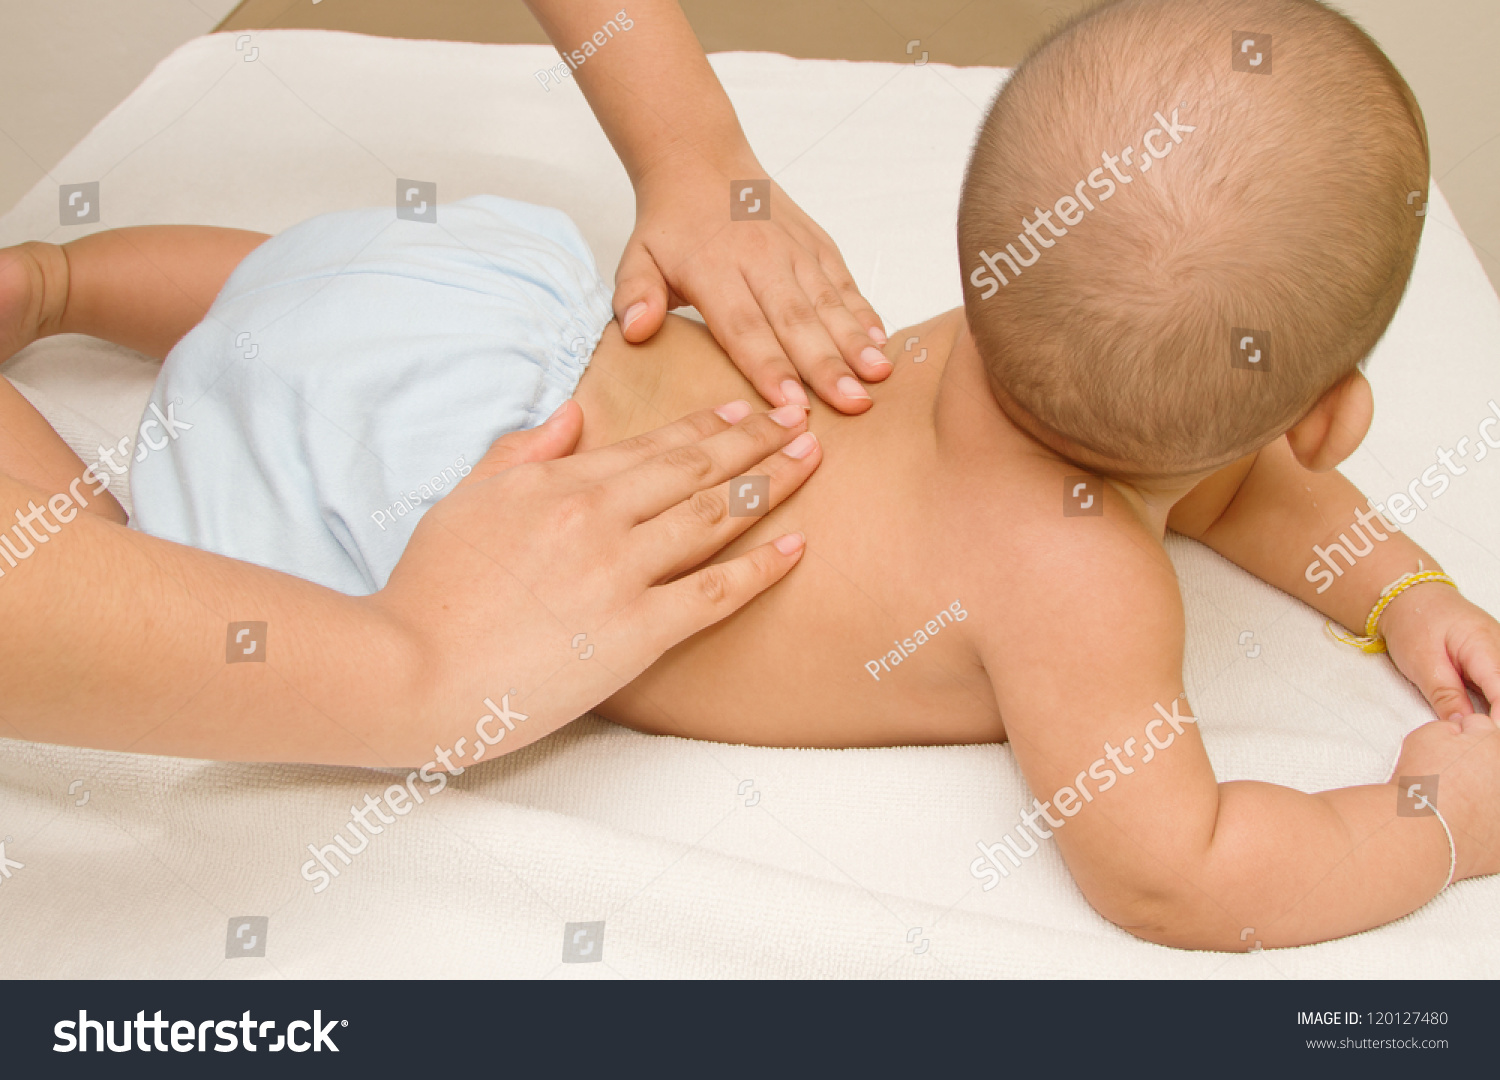 Ноги делают маме массаж. Массаж маме. Массаж животика новорожденному. Массаж грудному ребенку. Детский массаж живота девочке.